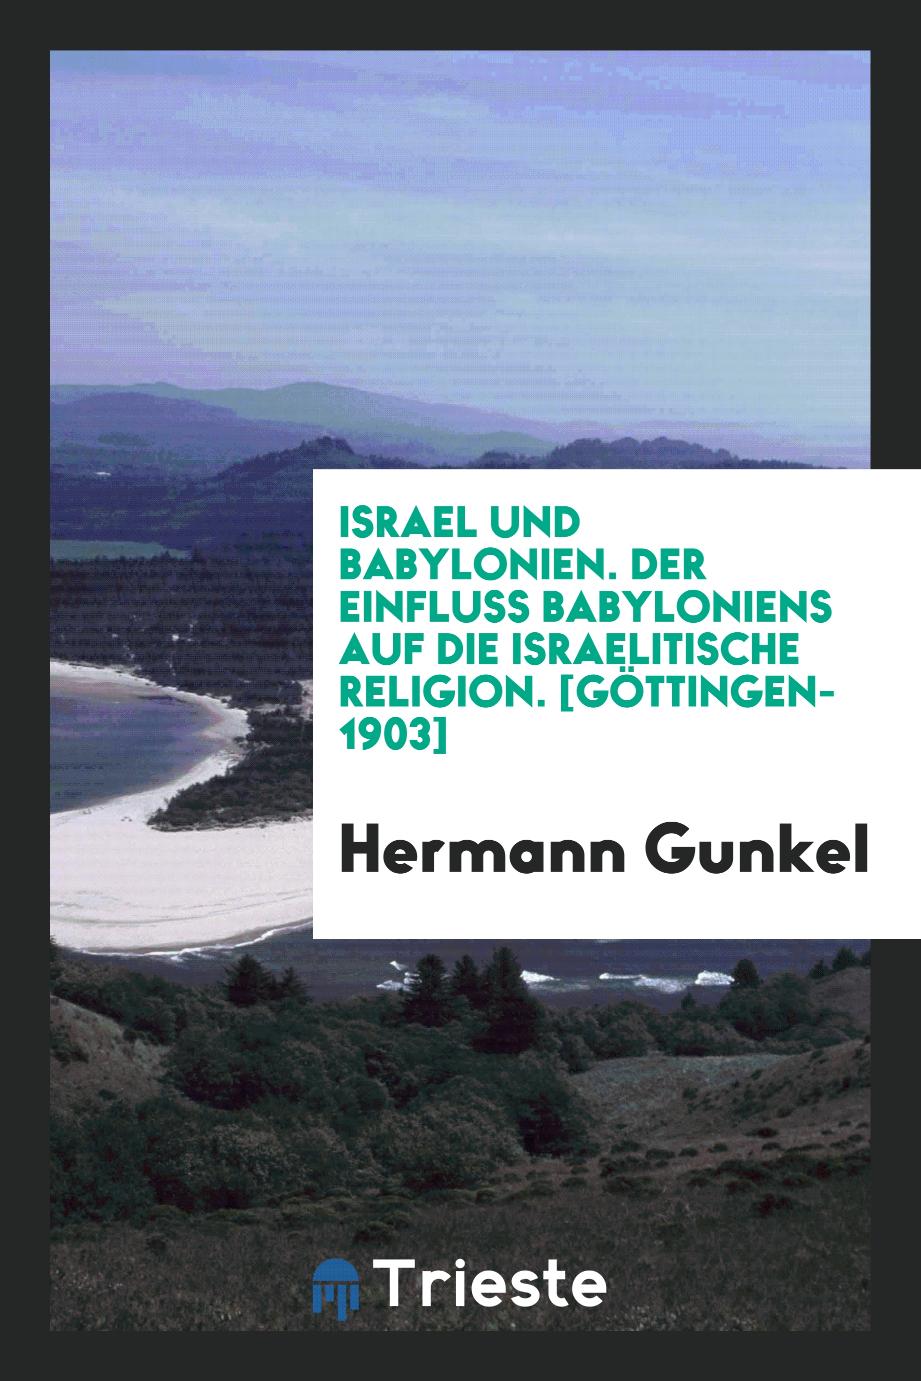 Hermann Gunkel - Israel und Babylonien. Der Einfluss Babyloniens auf die Israelitische Religion. [Göttingen-1903]